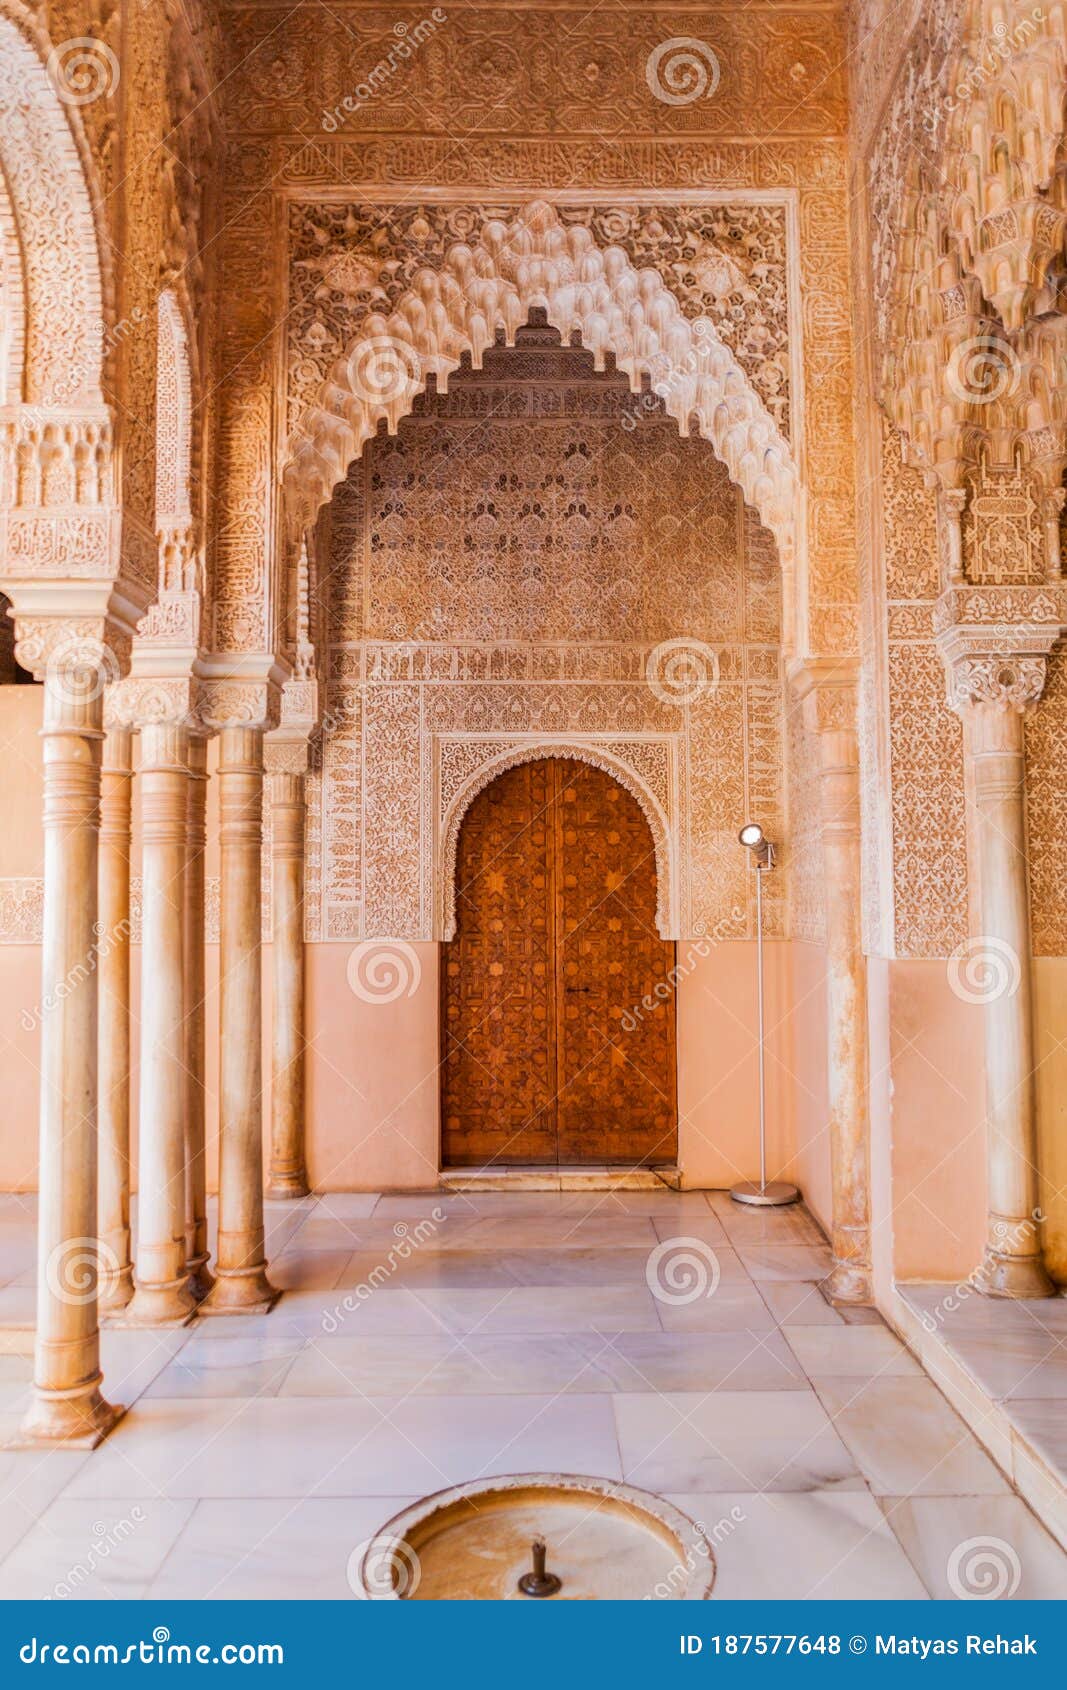 archway at nasrid palaces (palacios nazaries) at alhambra in granada, spa